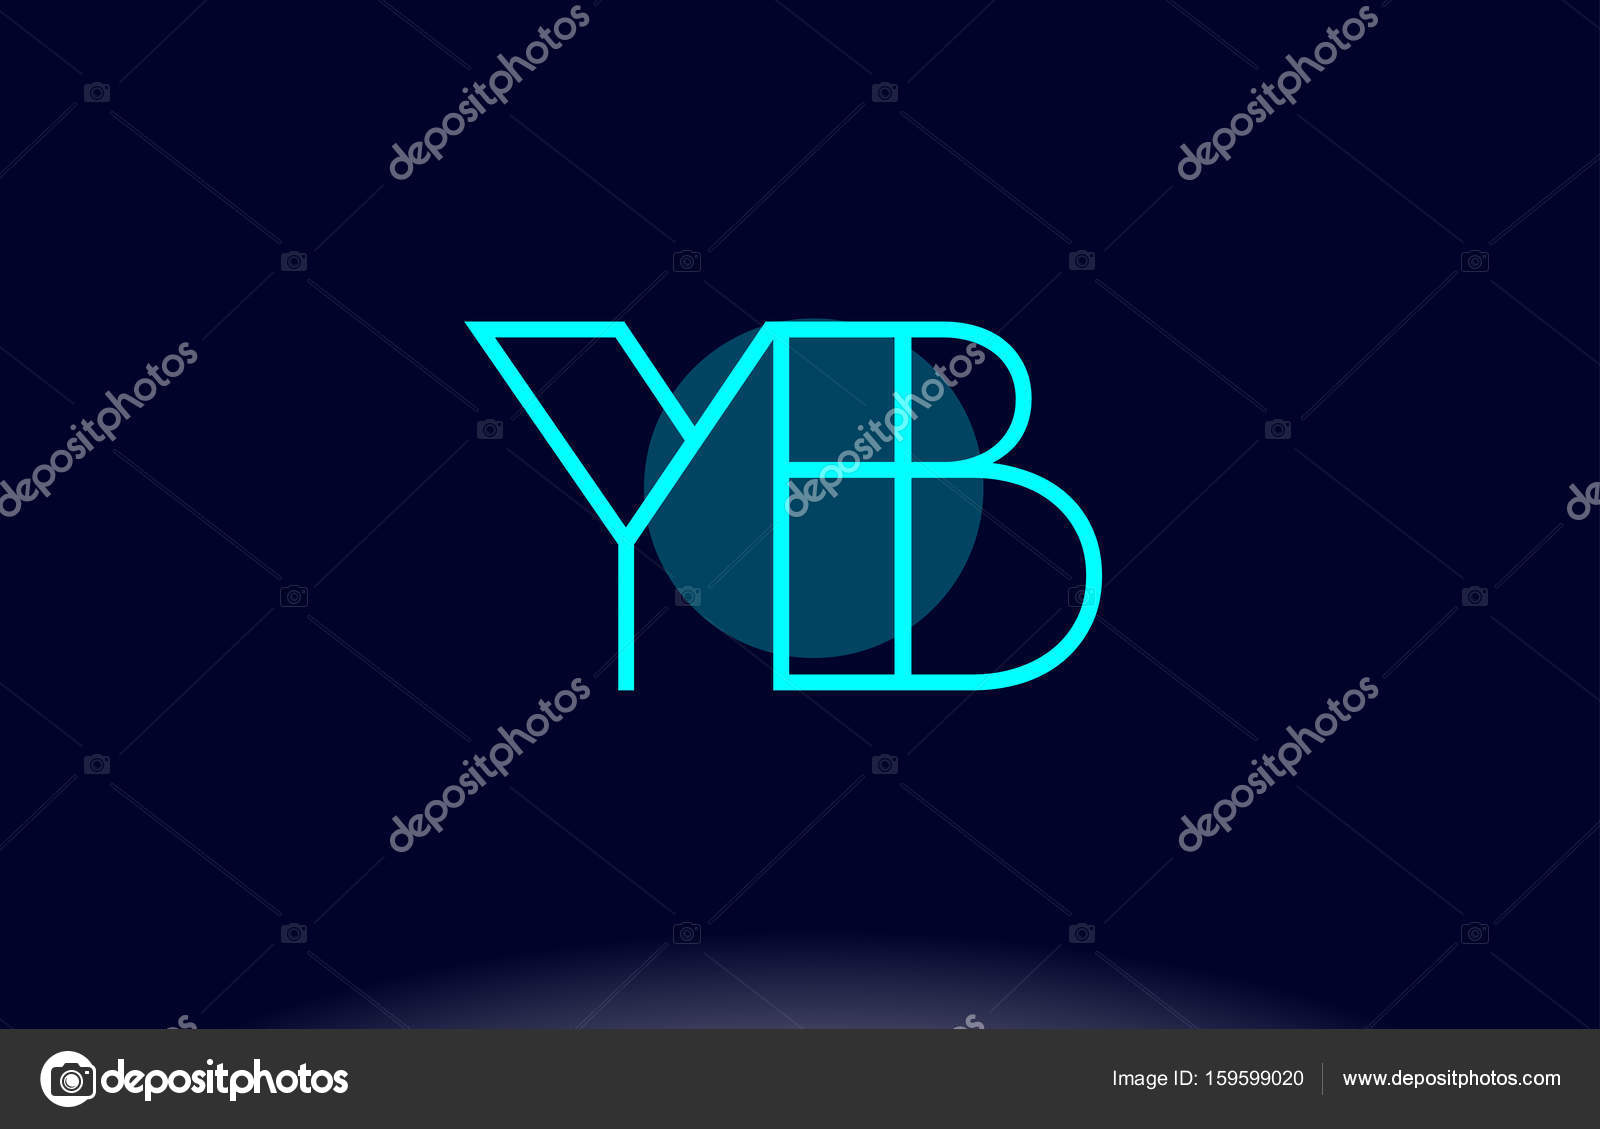 Yb Icon Images Vectorielles Yb Icon Vecteurs Libres De Droits Depositphotos